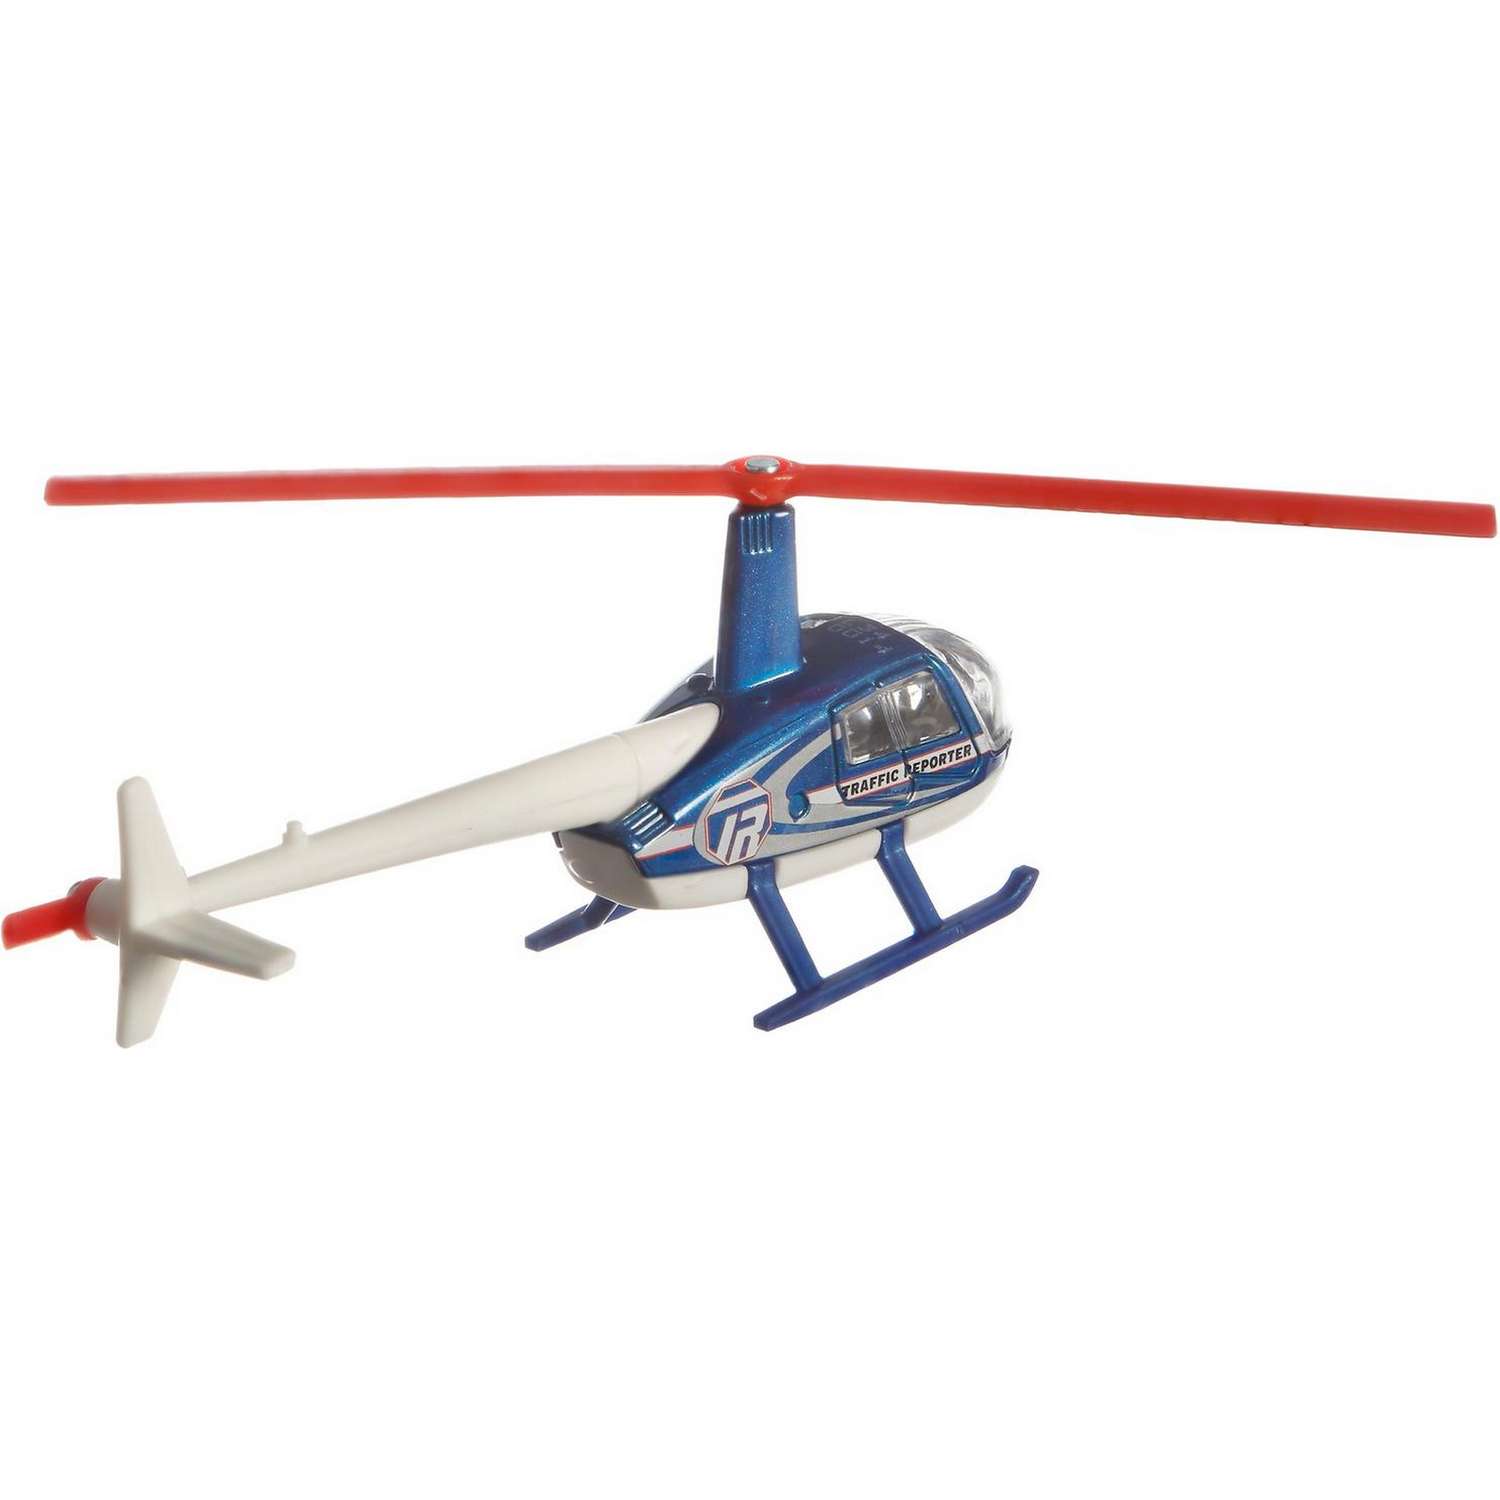 Игрушка Matchbox Транспорт воздушный Вертолет Робинзон R44 Рэйвен 2 GDY47 68982 - фото 4